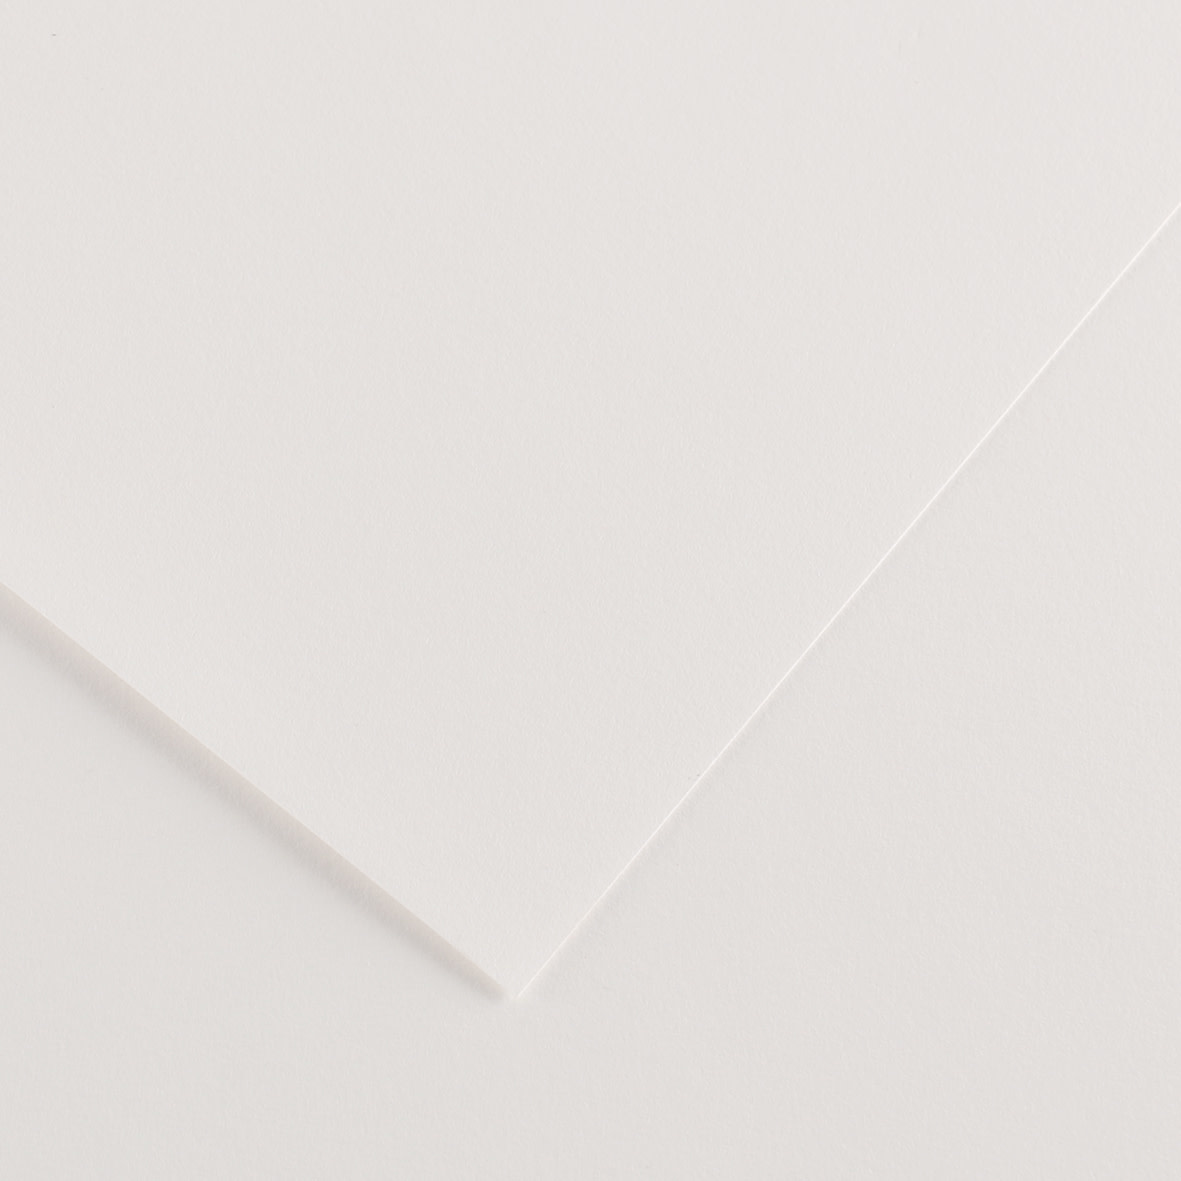 bijzonder Onzorgvuldigheid Boodschapper Colorline Paper White 8.5"x11" 300gsm - RISD Store